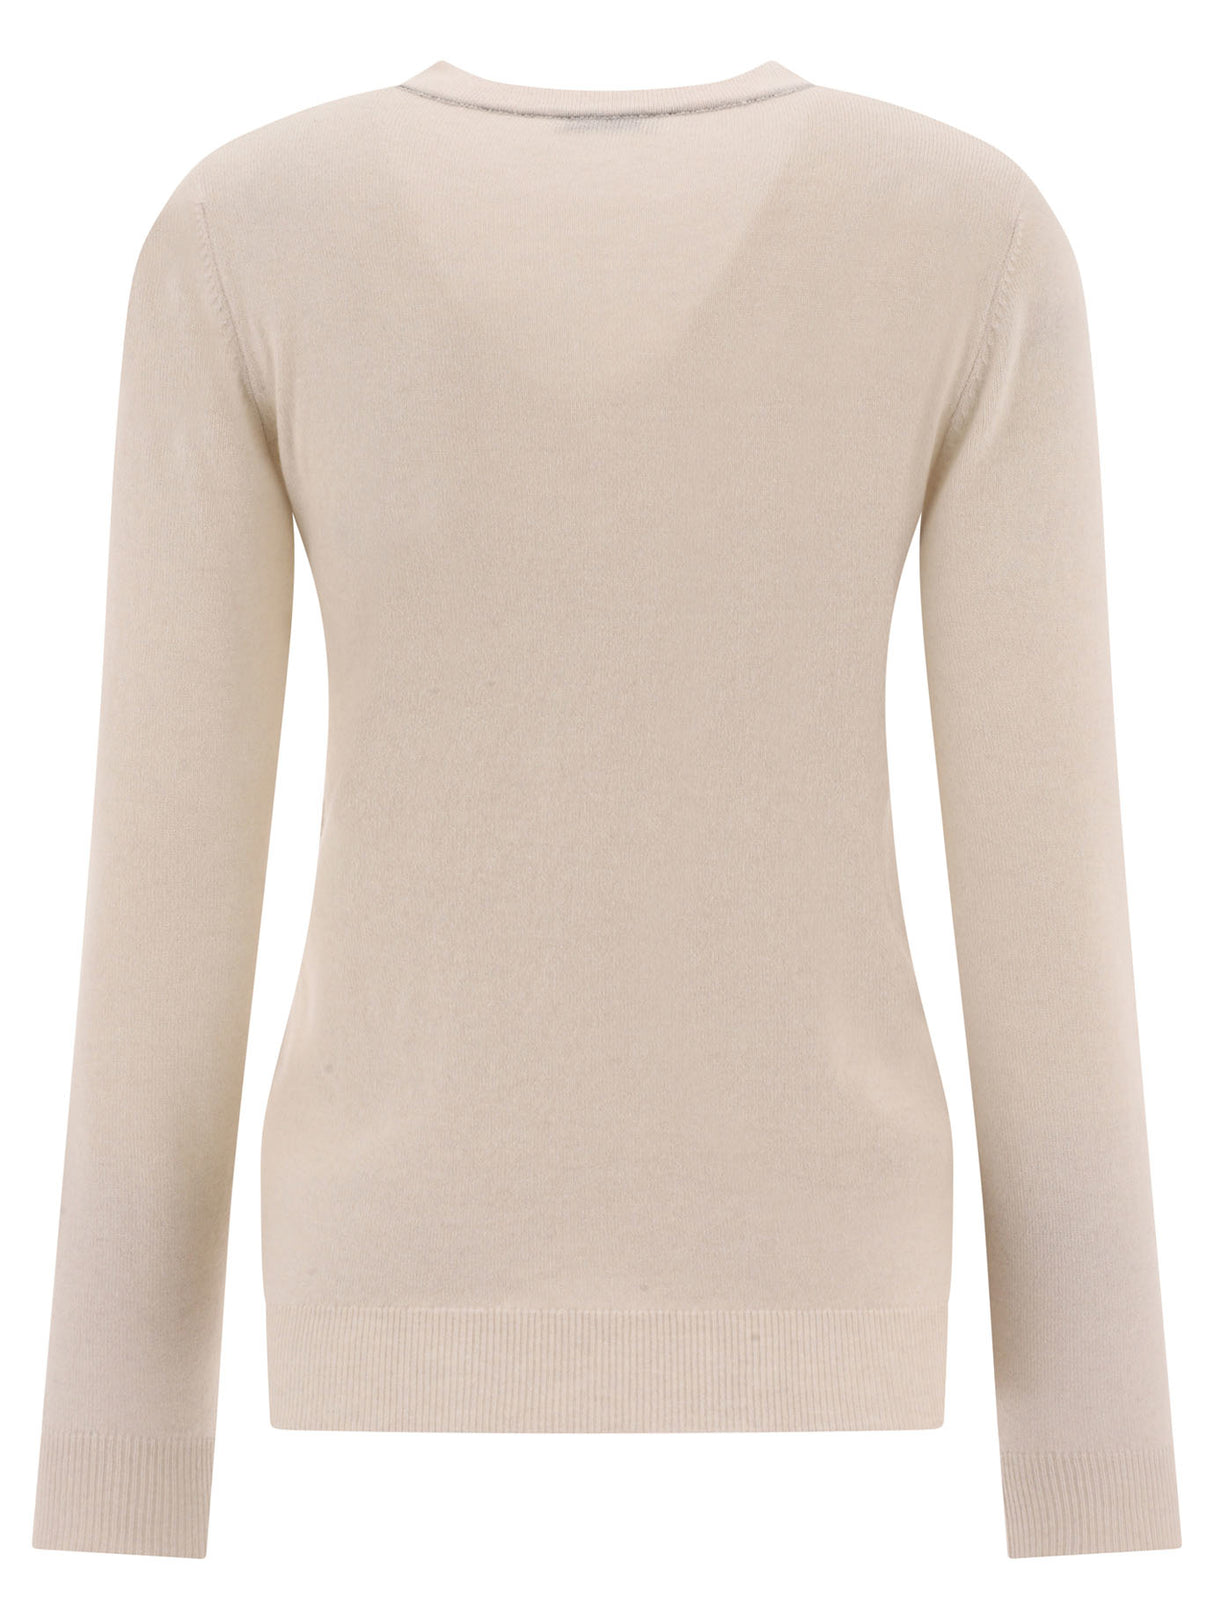 BRUNELLO CUCINELLI Elegant Cashmere Sweater with Monili Decoration for Women - White